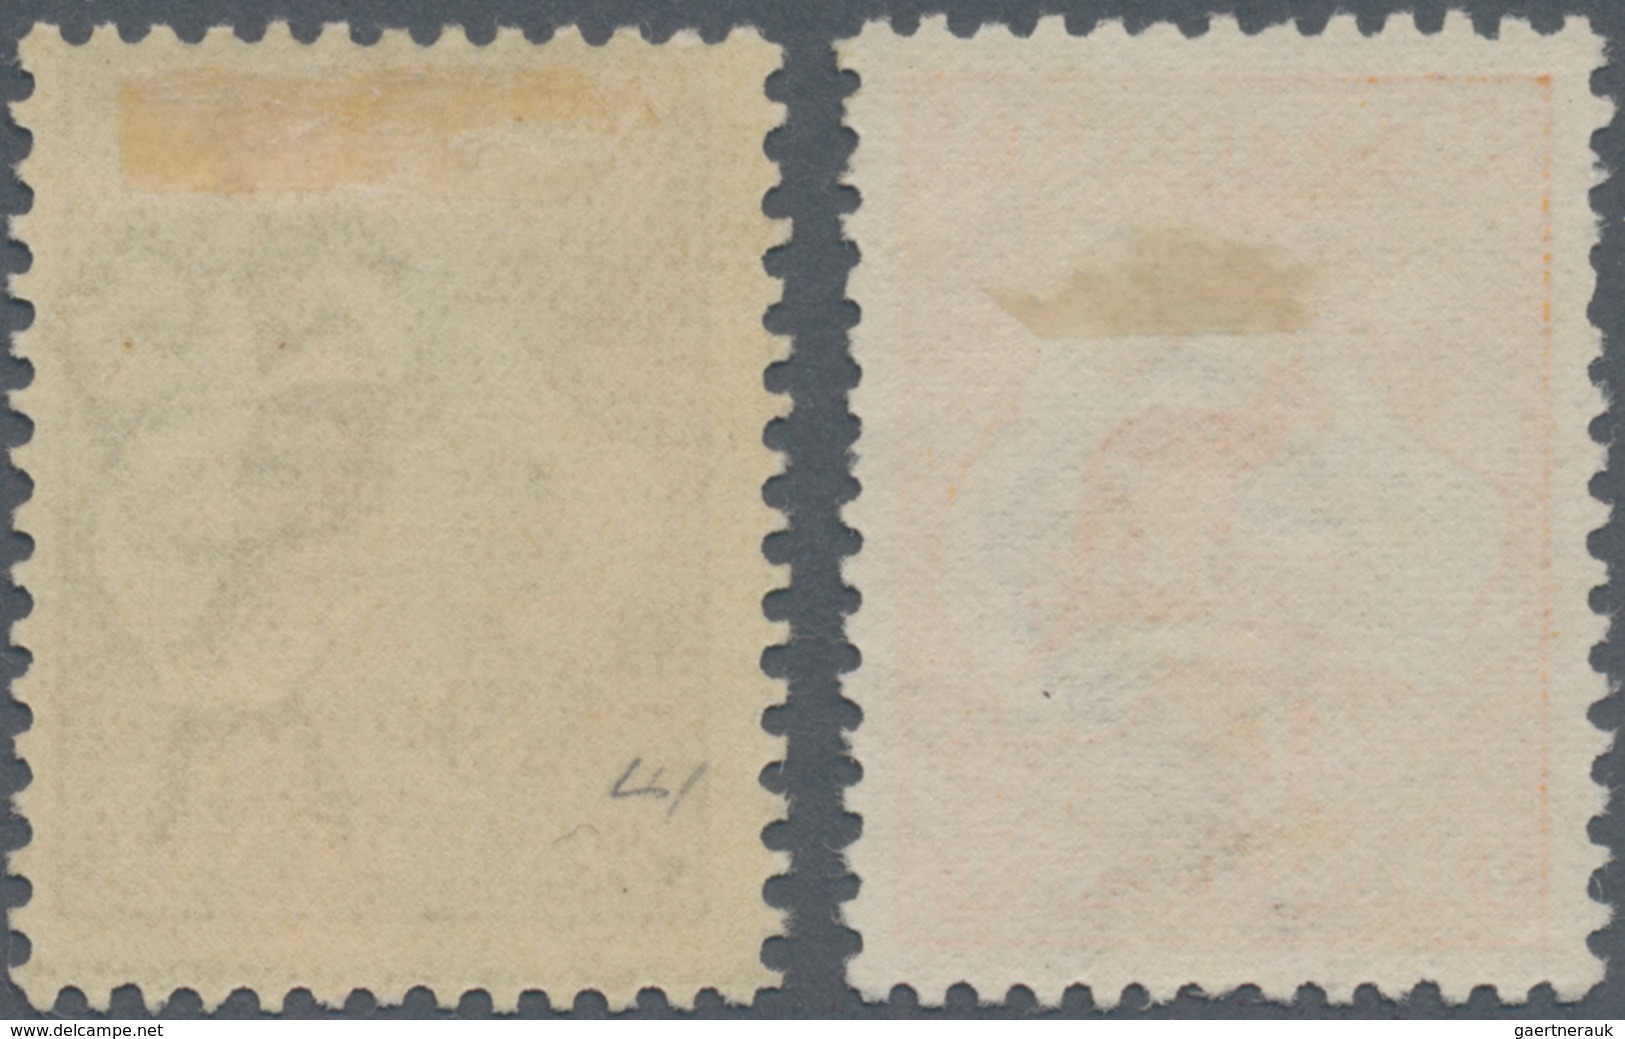 Australien: 1913/1915, Kangaroos 4d. Orange 1st Wmk. And 9d. Violet 2nd Wmk., Mint Lightly Hinged, S - Mint Stamps